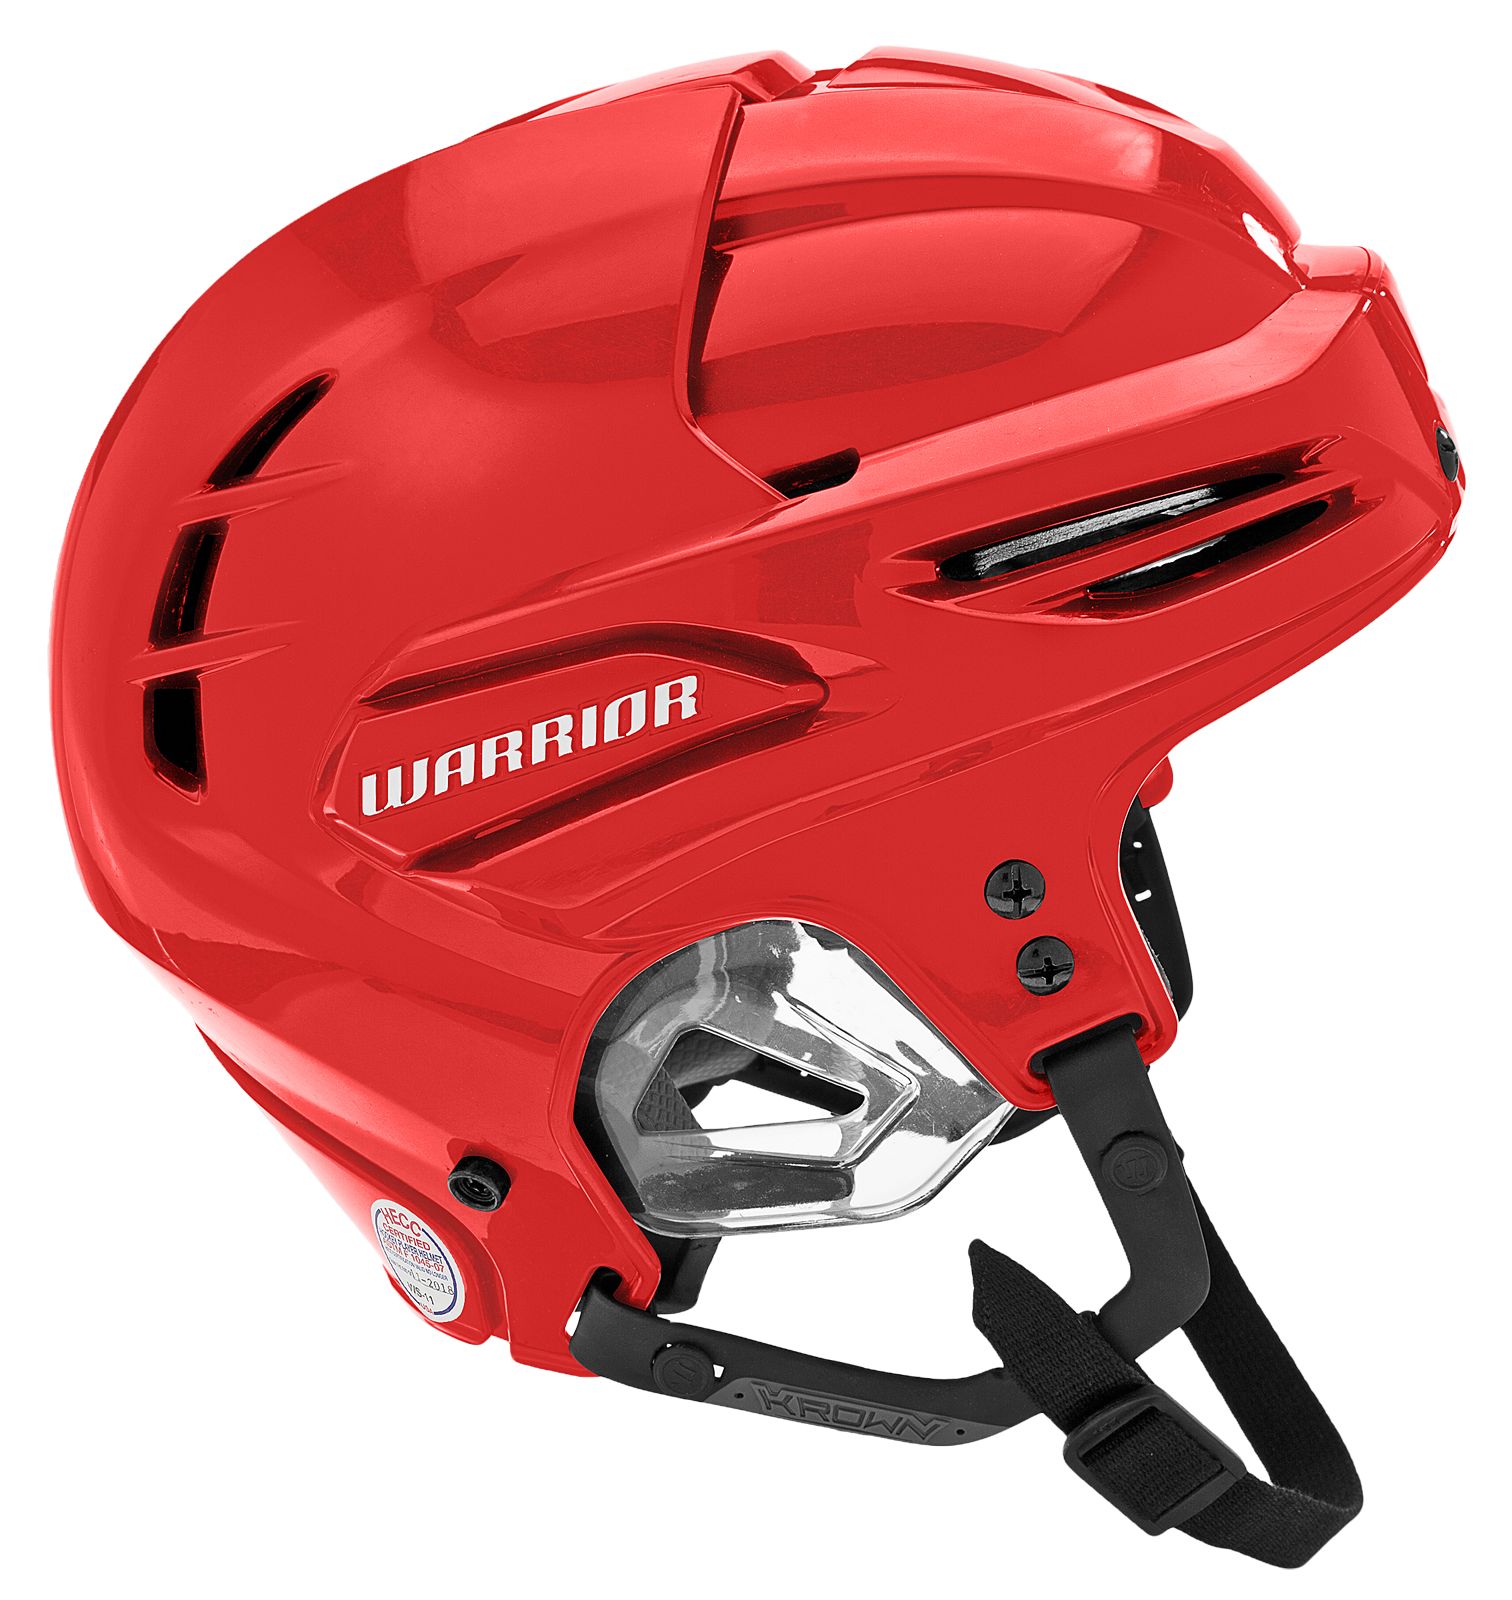 Krown 360 Helmet, Red image number 1